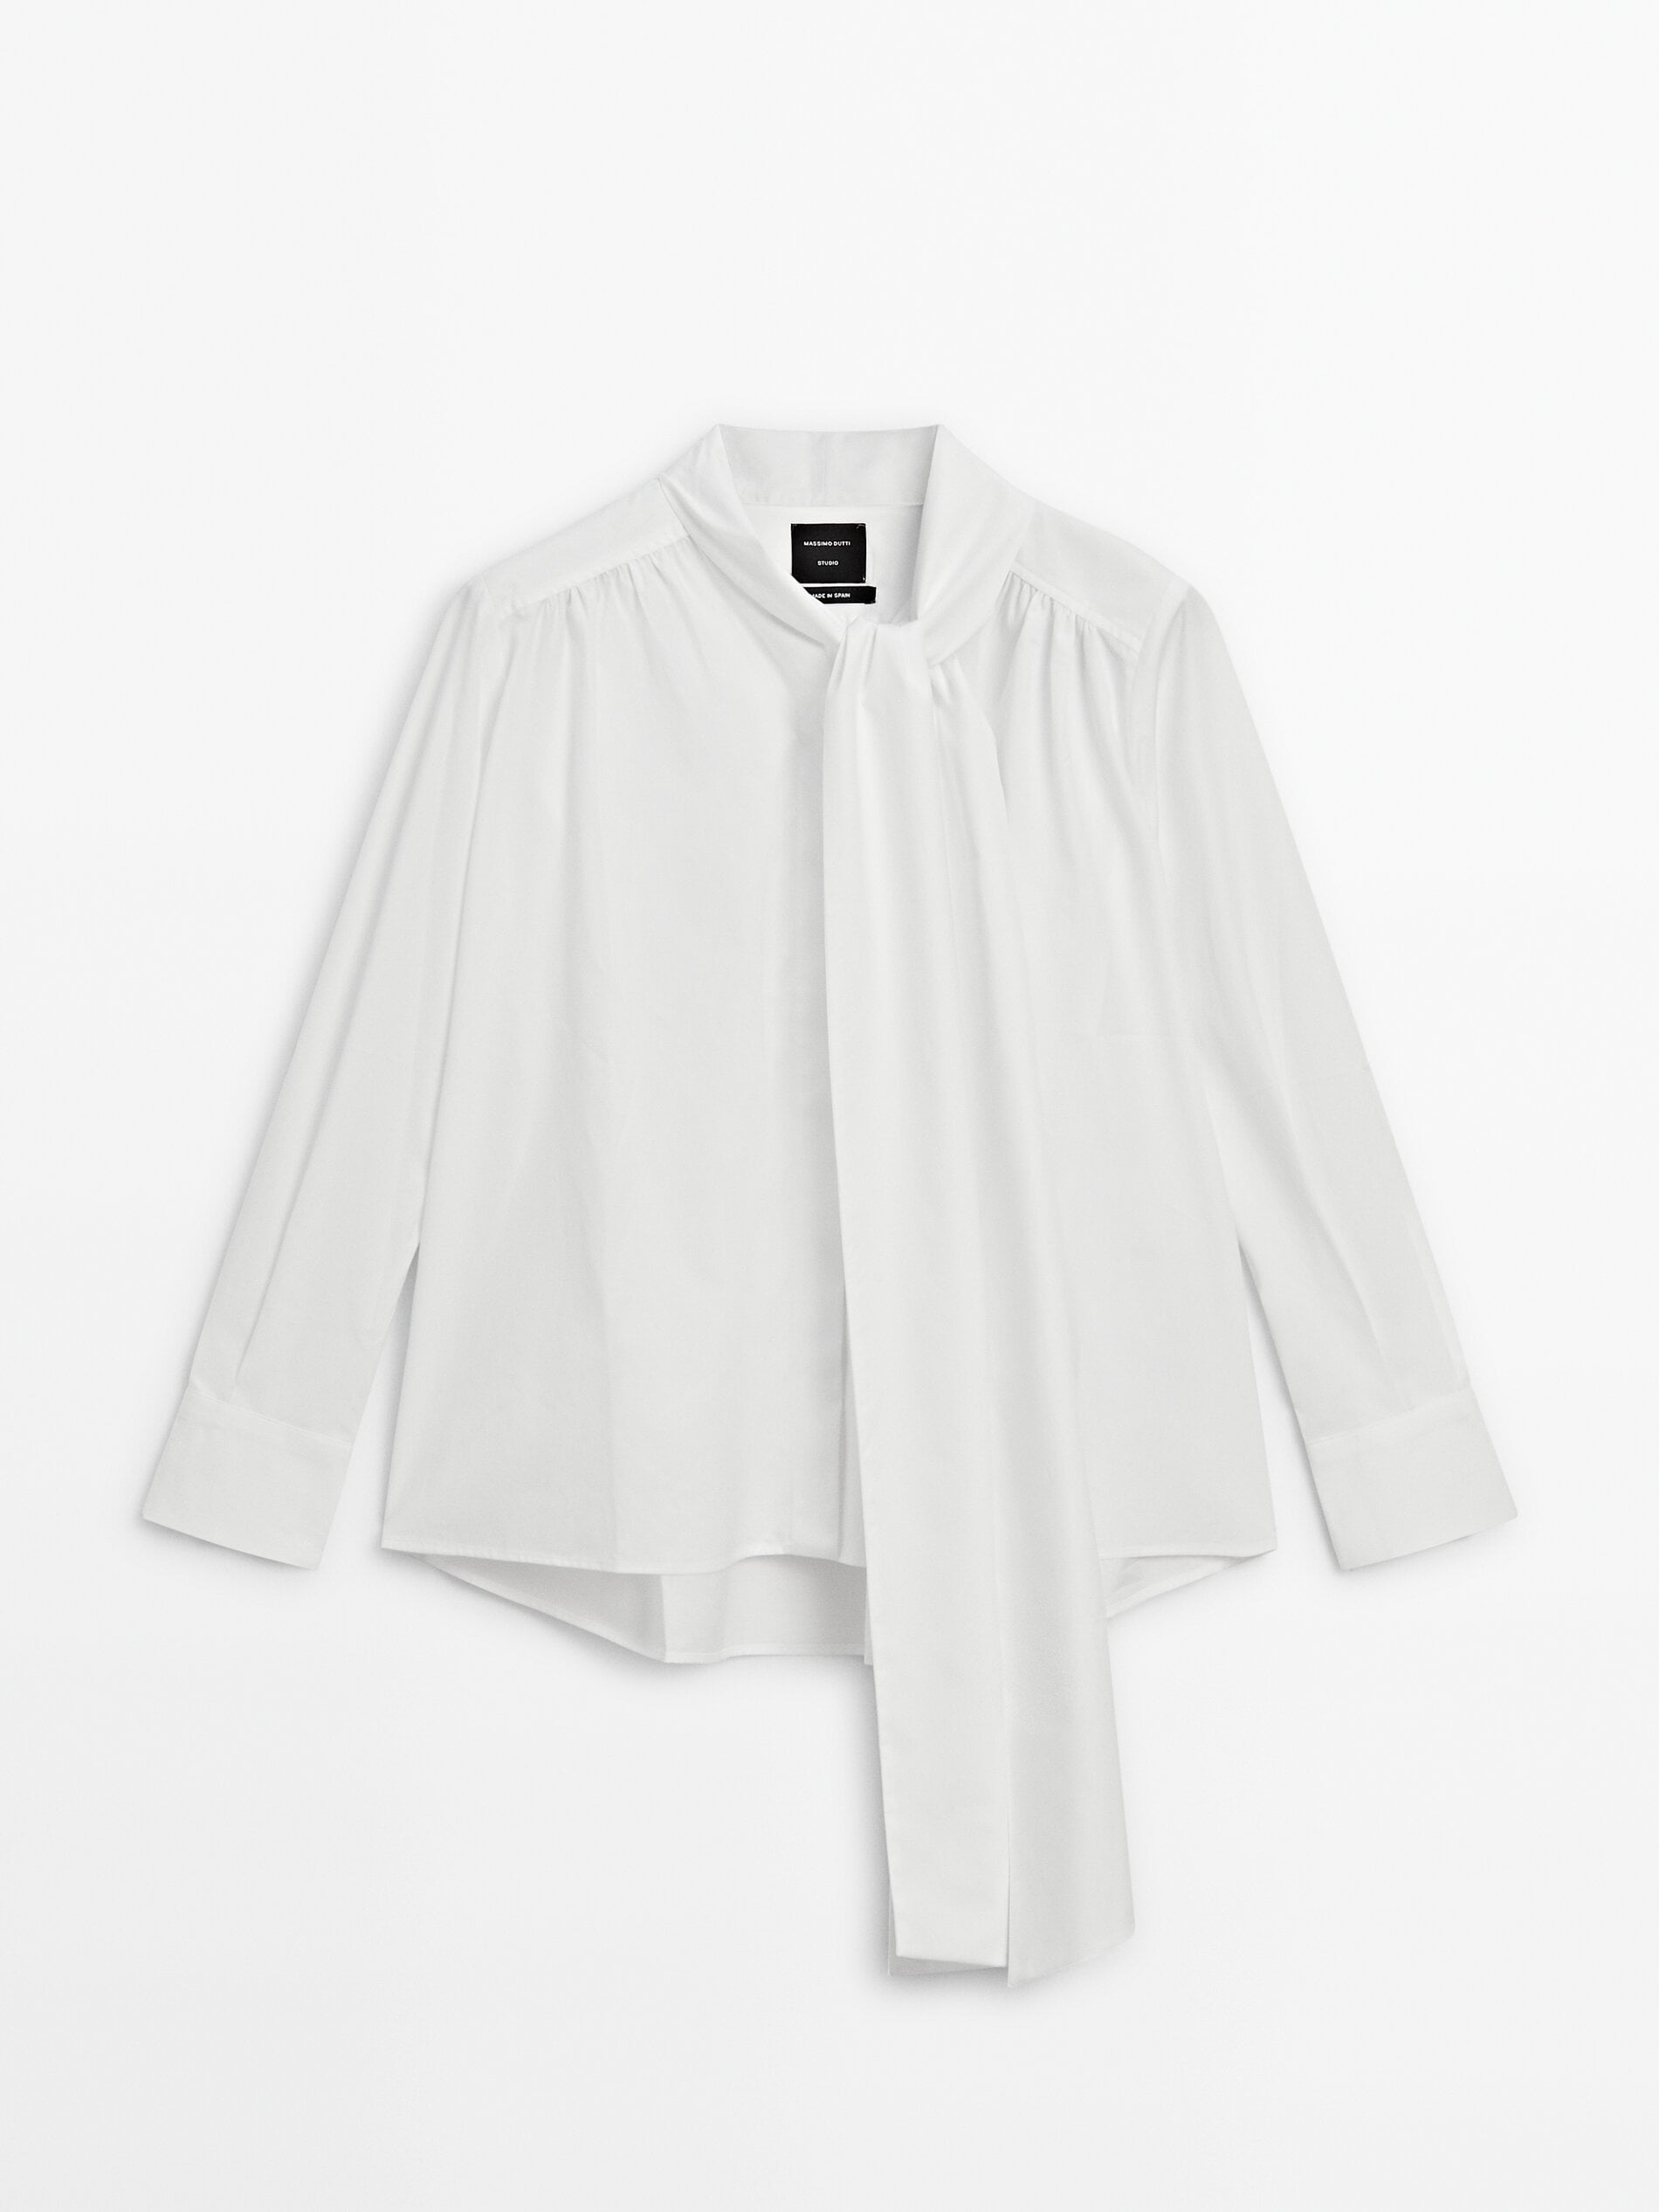 Рубашка из хлопка со сборками на контрастных пуговицах Massimo Dutti, белый